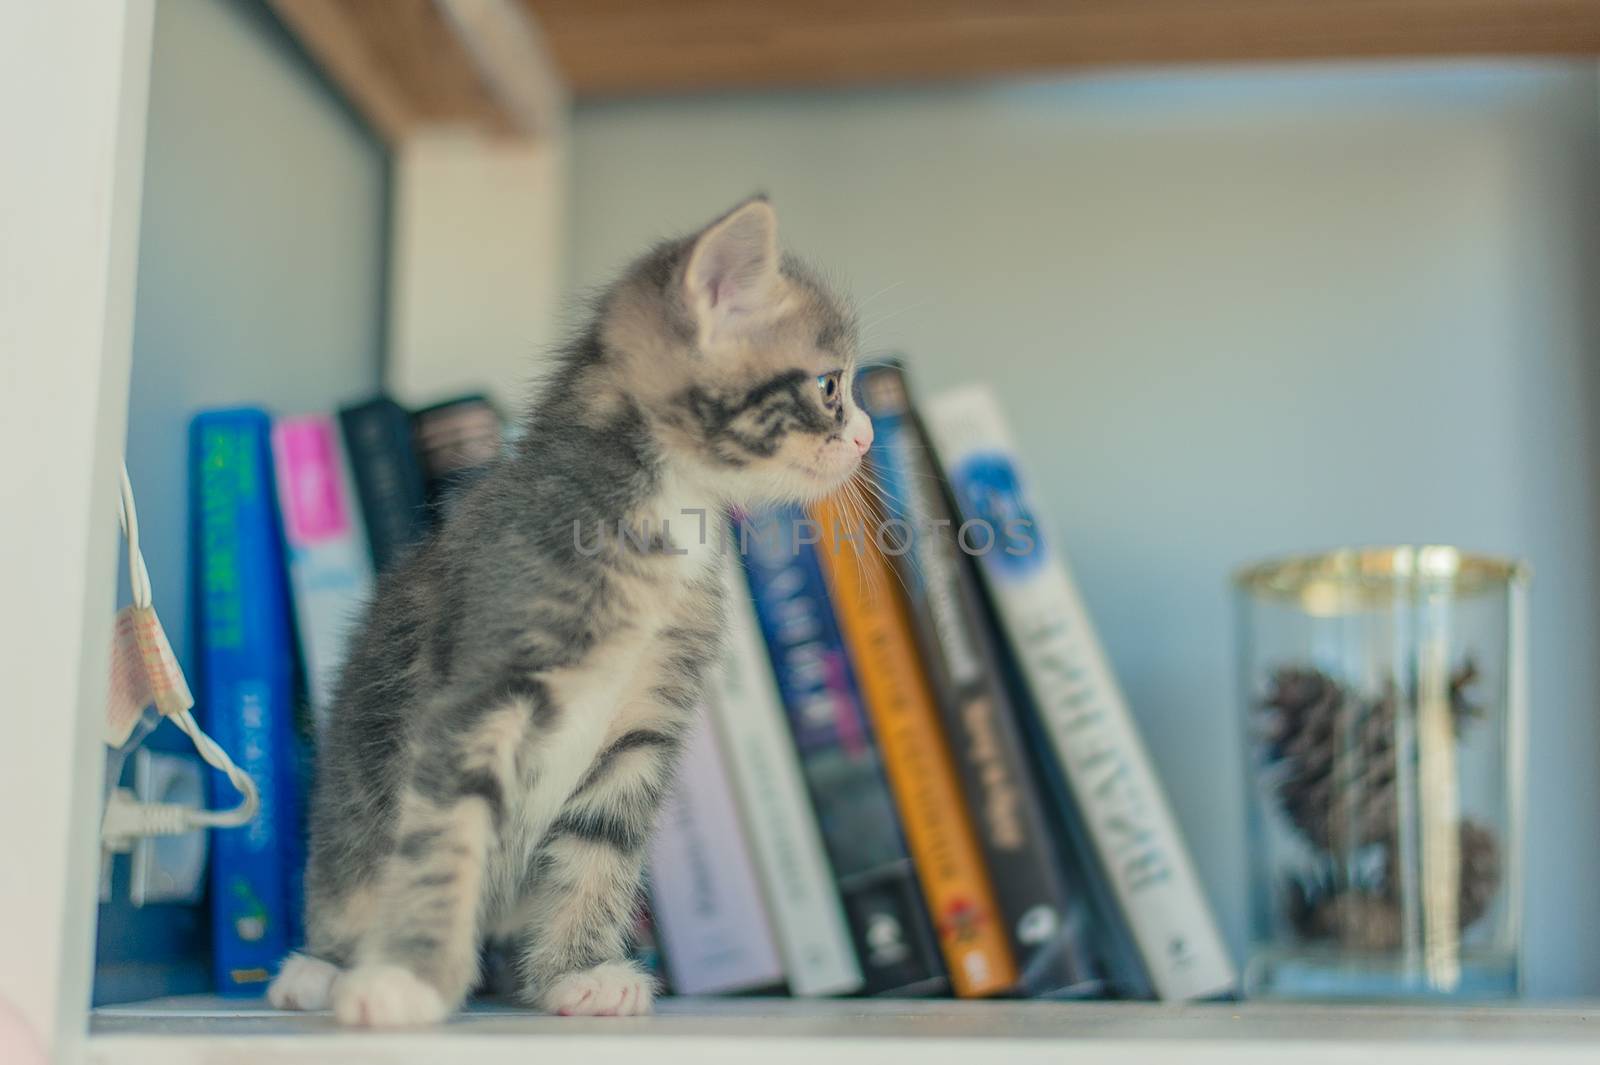 Gray kitten sits on shelves near books. by chernobrovin